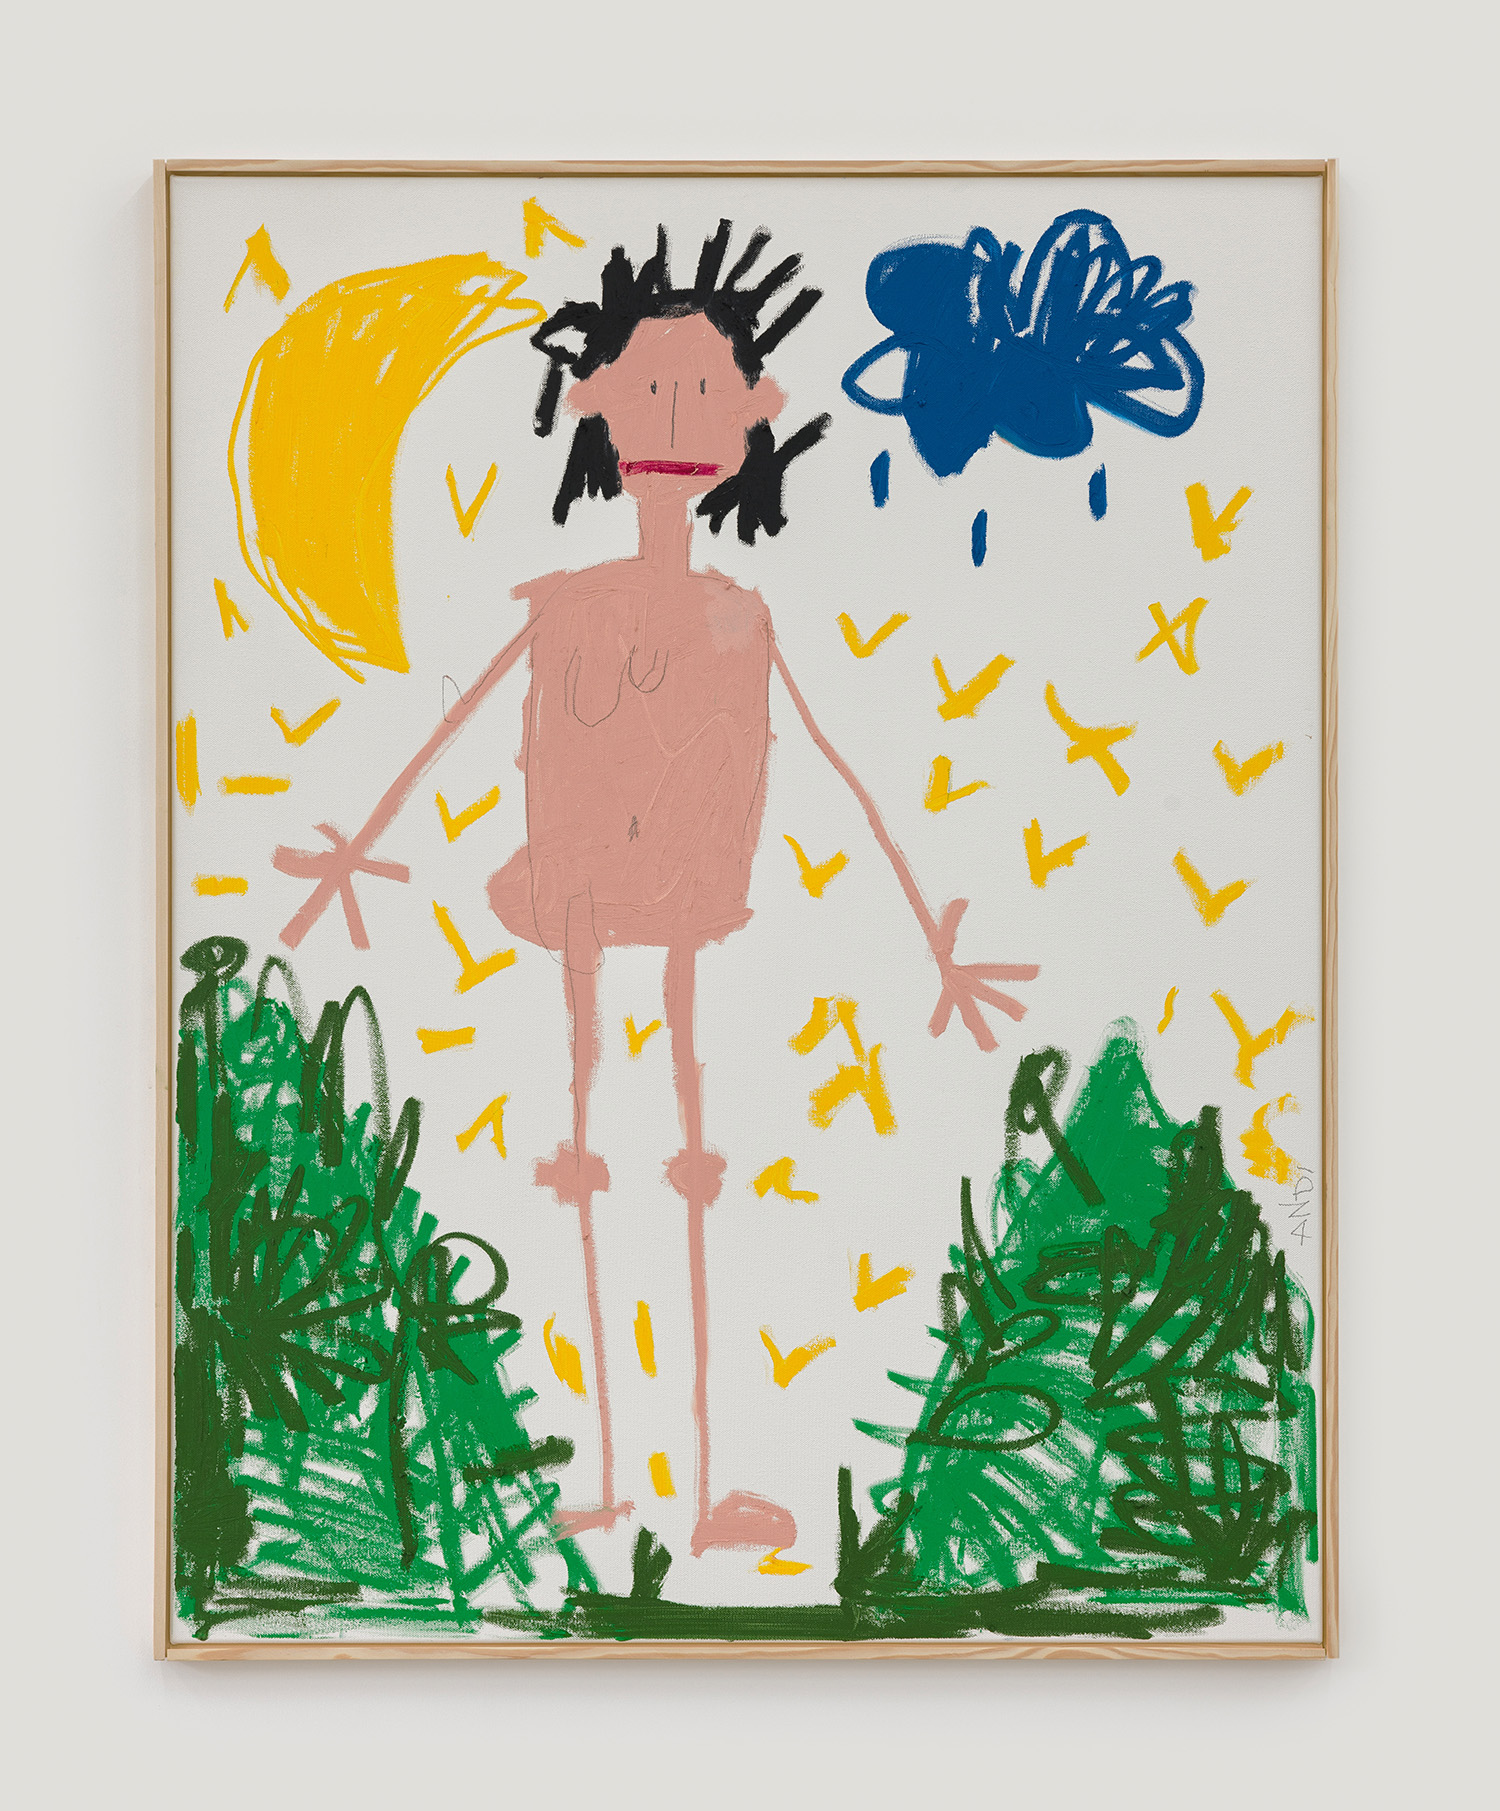 Andi Fischer, STERNEHIMMEL DORT, 2022, oilstick on canvas, 140 x 110 cm, 55 1/8 x 43 1/4 in